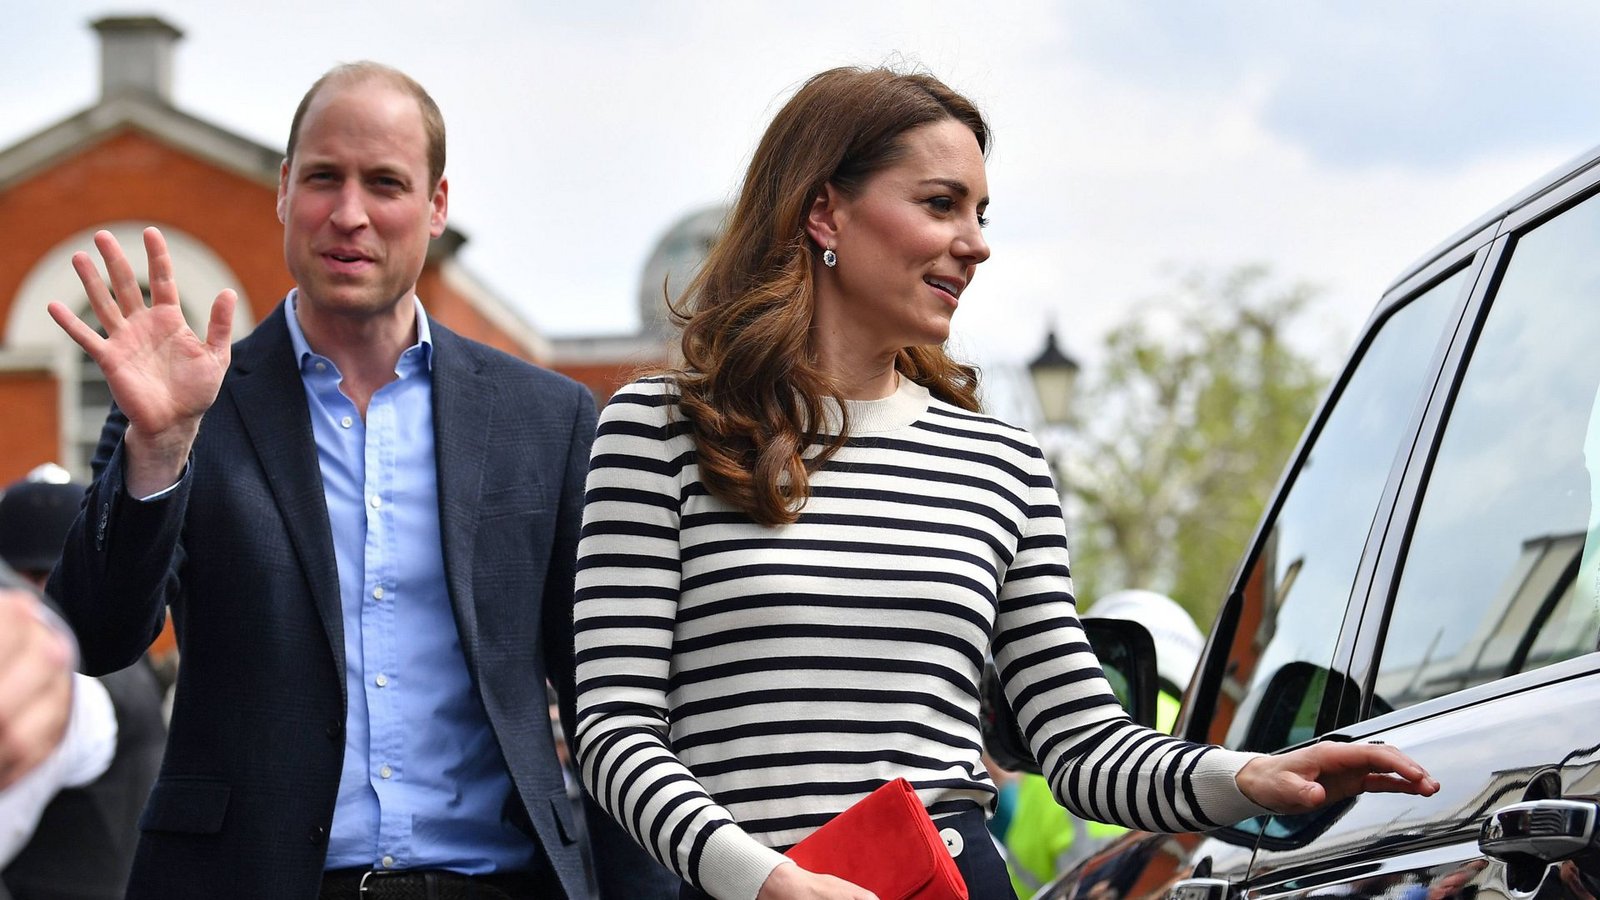 2019: Bei einem Termin mit Prinz William kombinierte Kate einen schmal geschnittenen Streifenpulli mit einer hochsitzenden dunkelblauen Marlenehose.Foto: imago images/i Images/i-Images